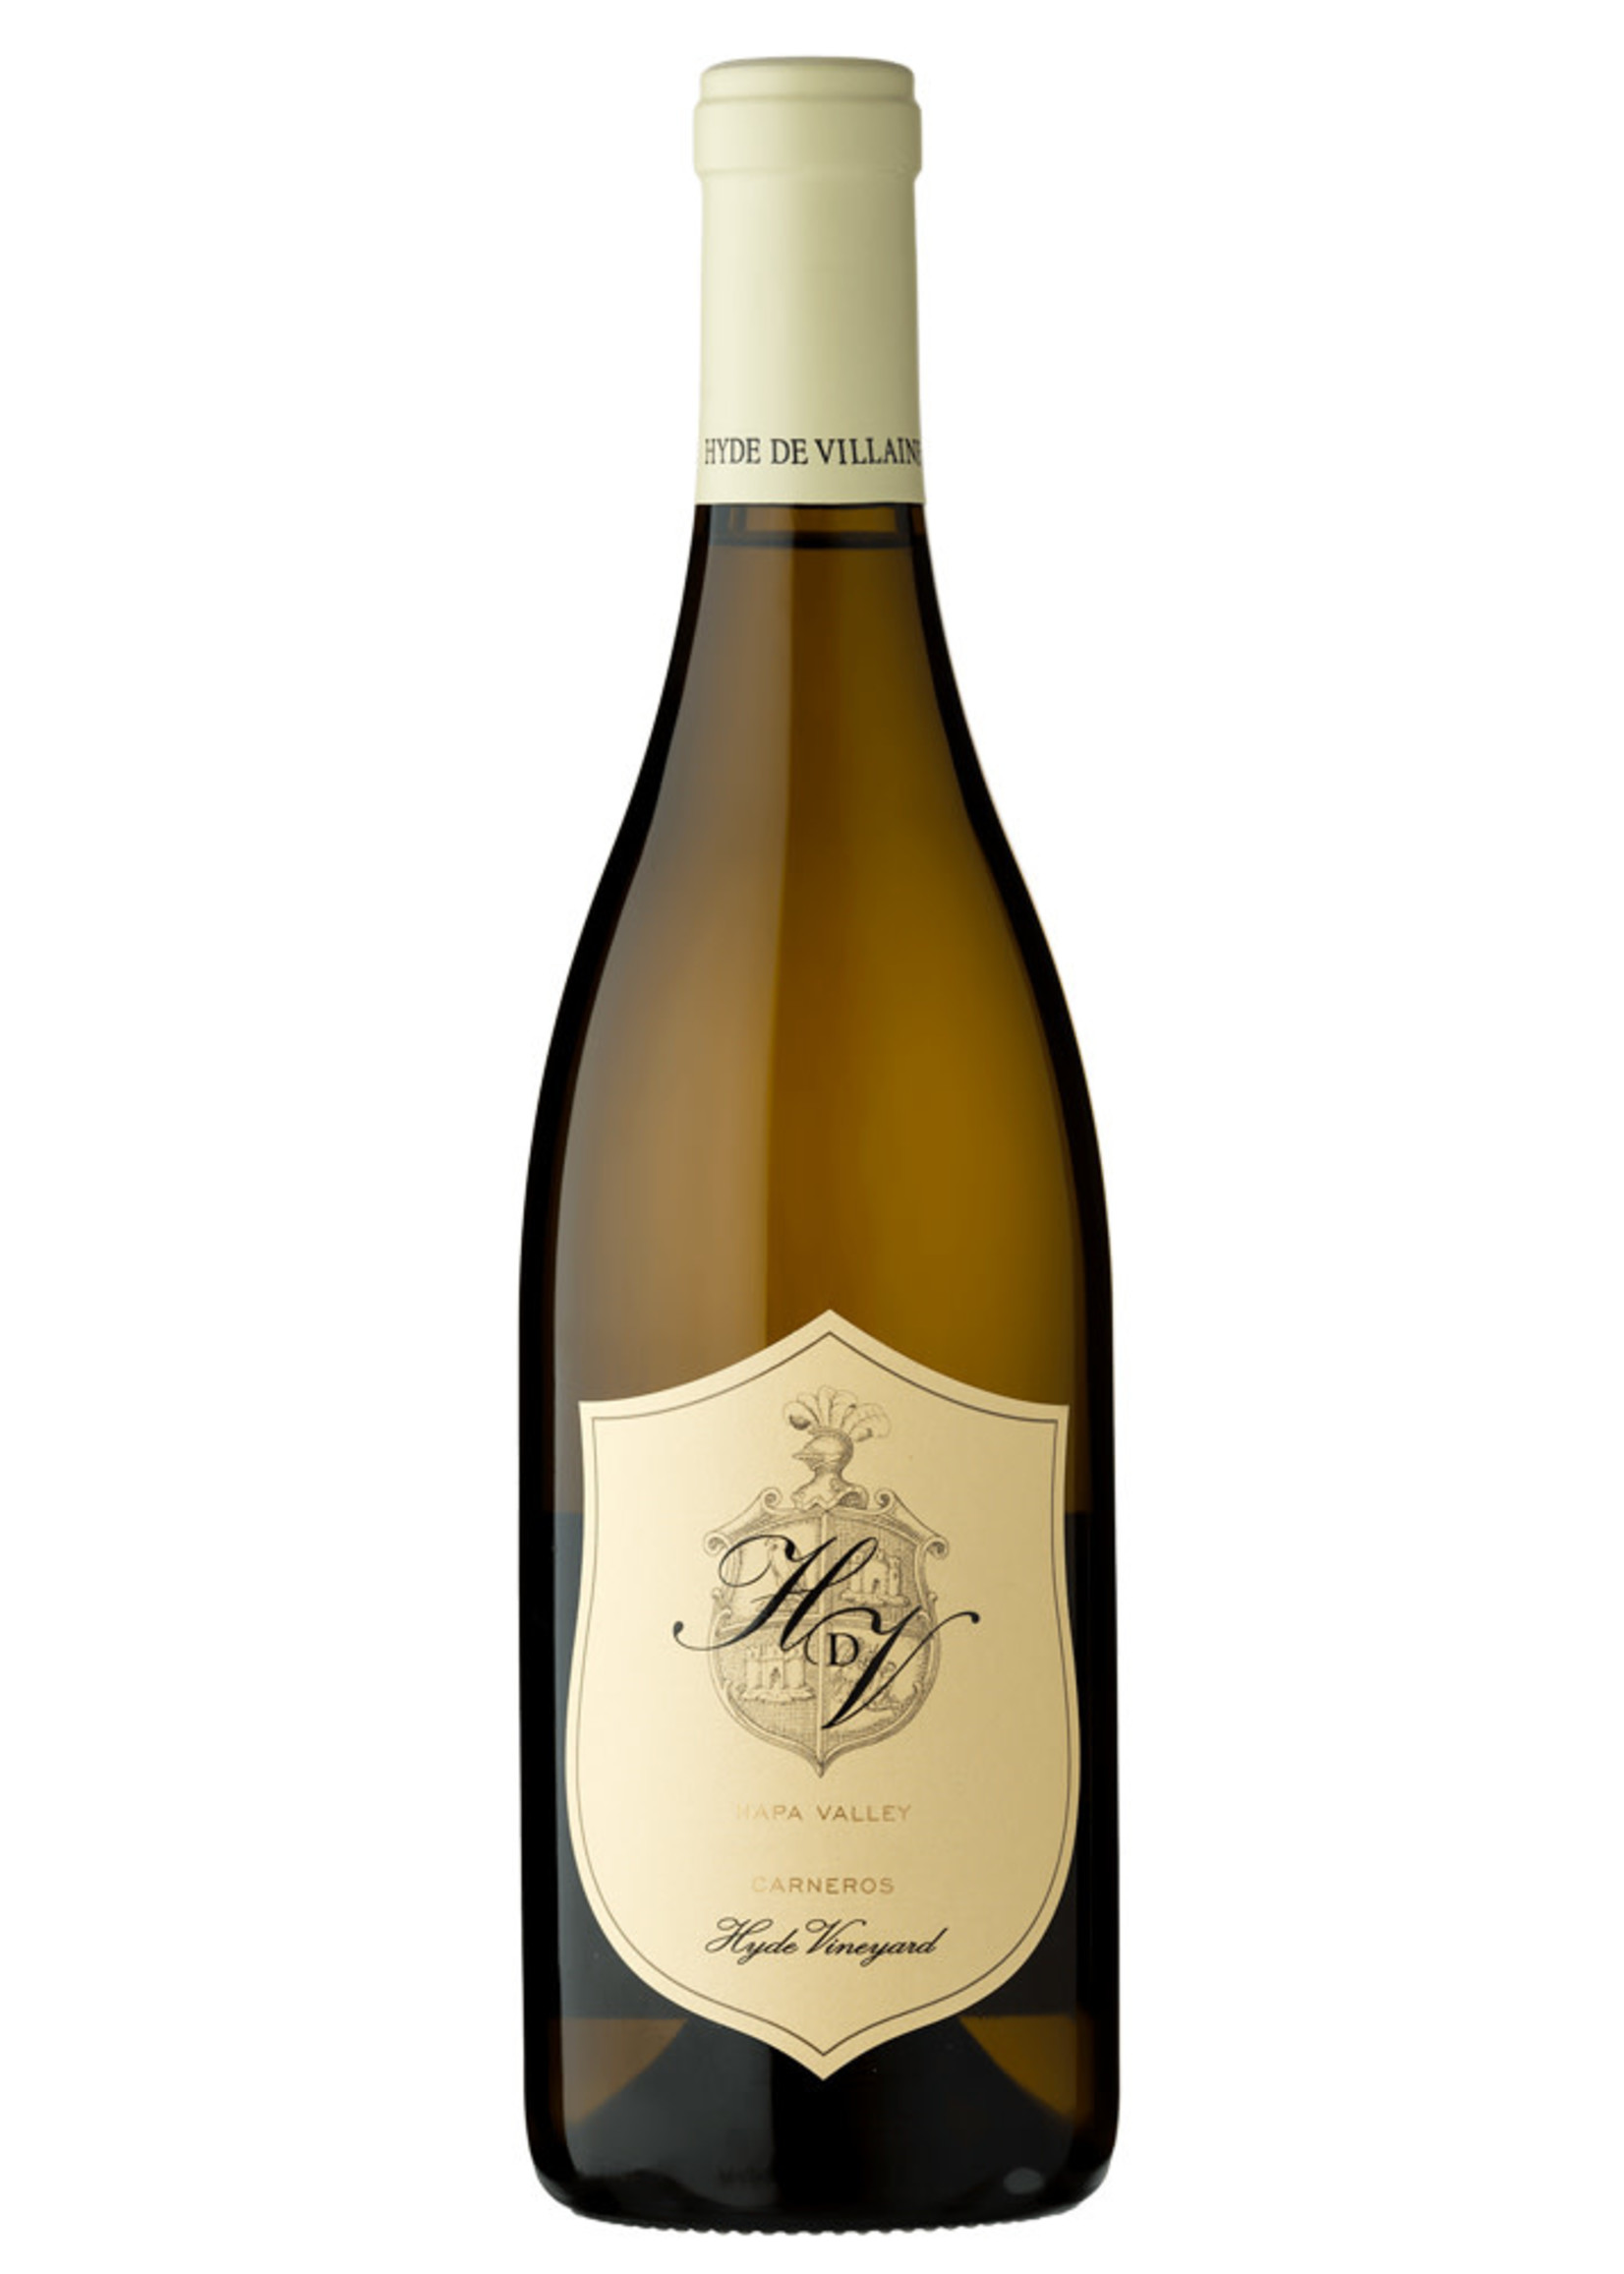 HDV Chardonnay Carneros “Hyde Vineyard” 2019 750ML